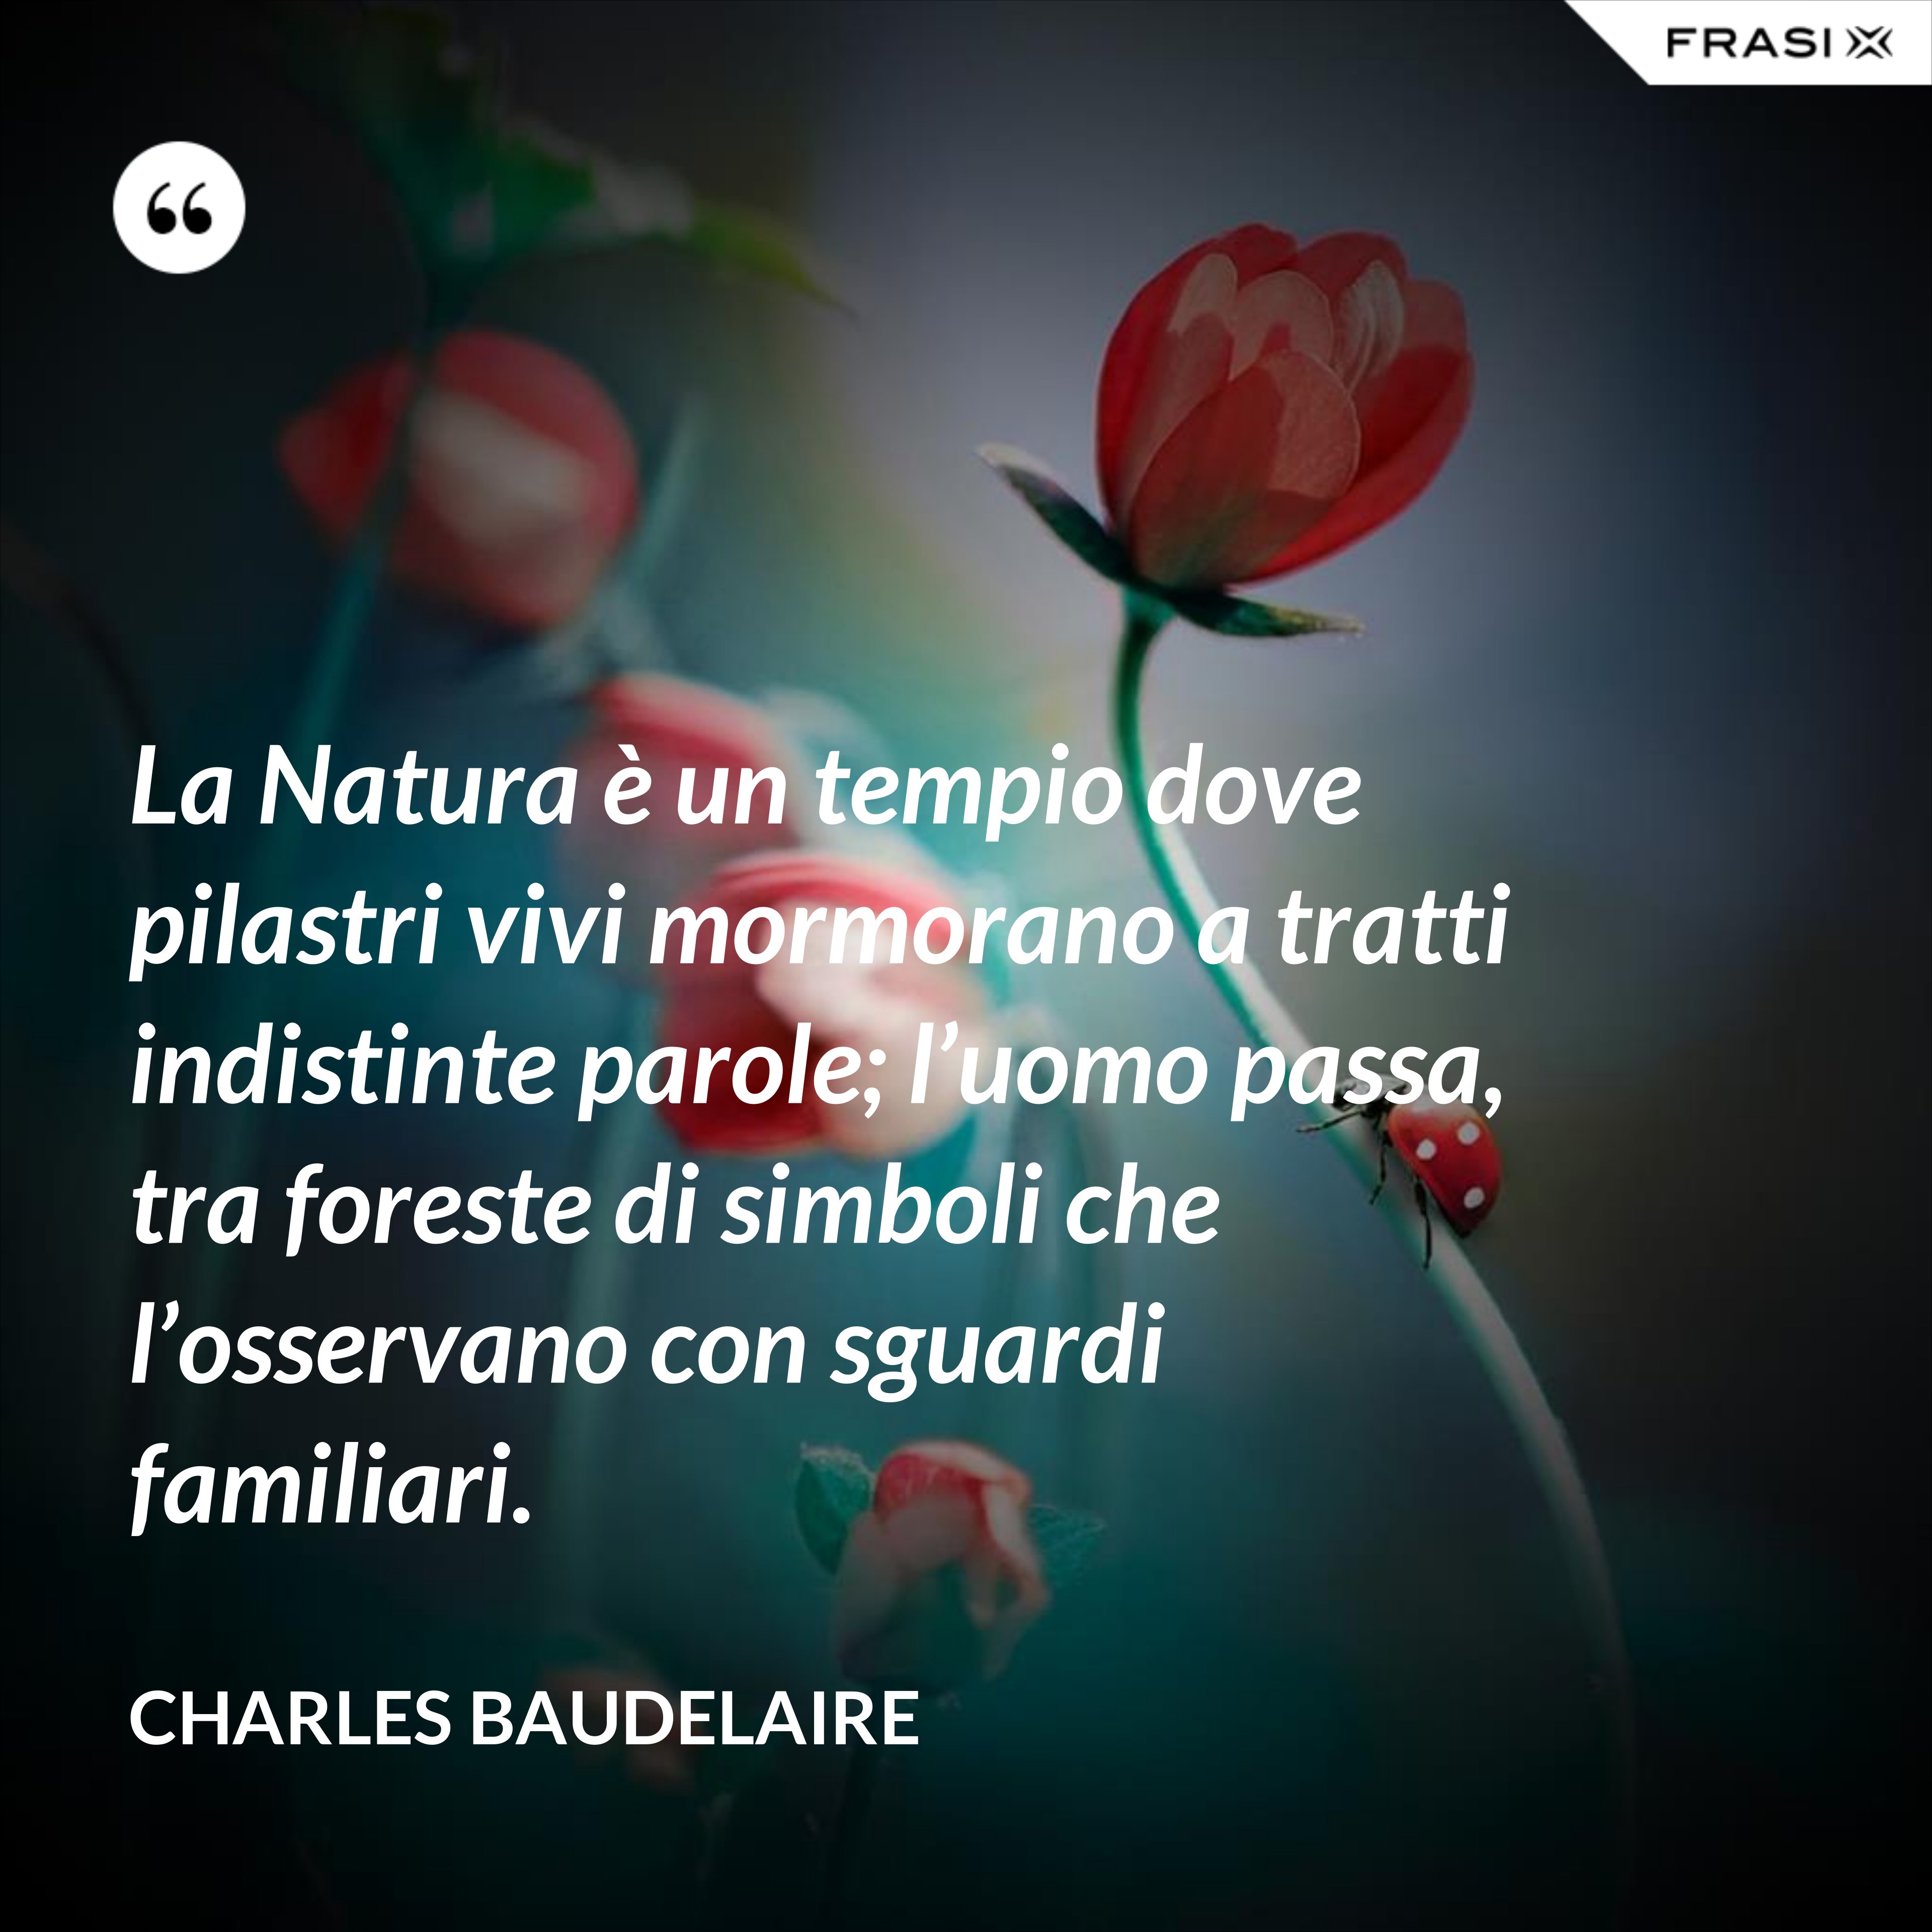 La Natura è un tempio dove pilastri vivi mormorano a tratti indistinte parole; l’uomo passa, tra foreste di simboli che l’osservano con sguardi familiari. - Charles Baudelaire